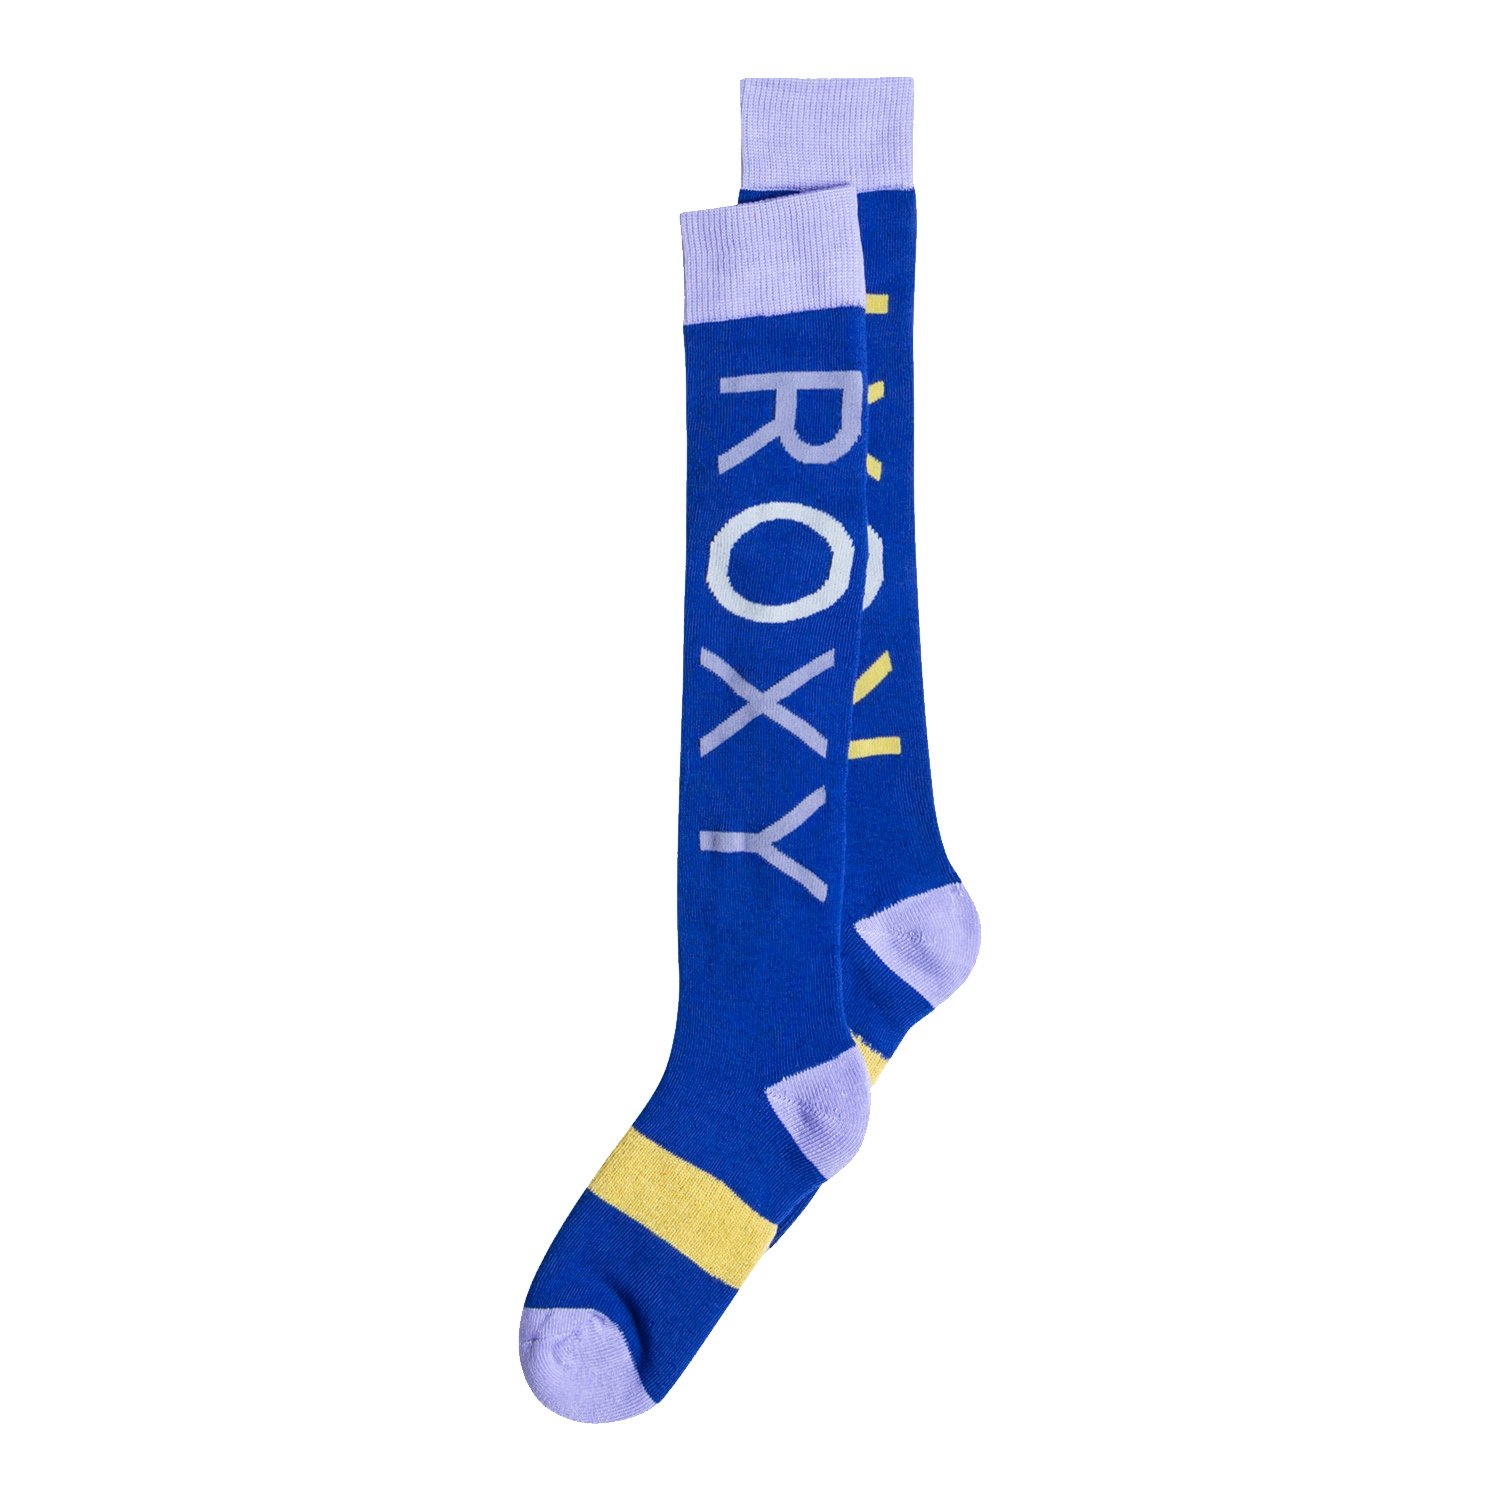 Roxy Misty Snowboard/Kayak Çorabı - Mavi - 1